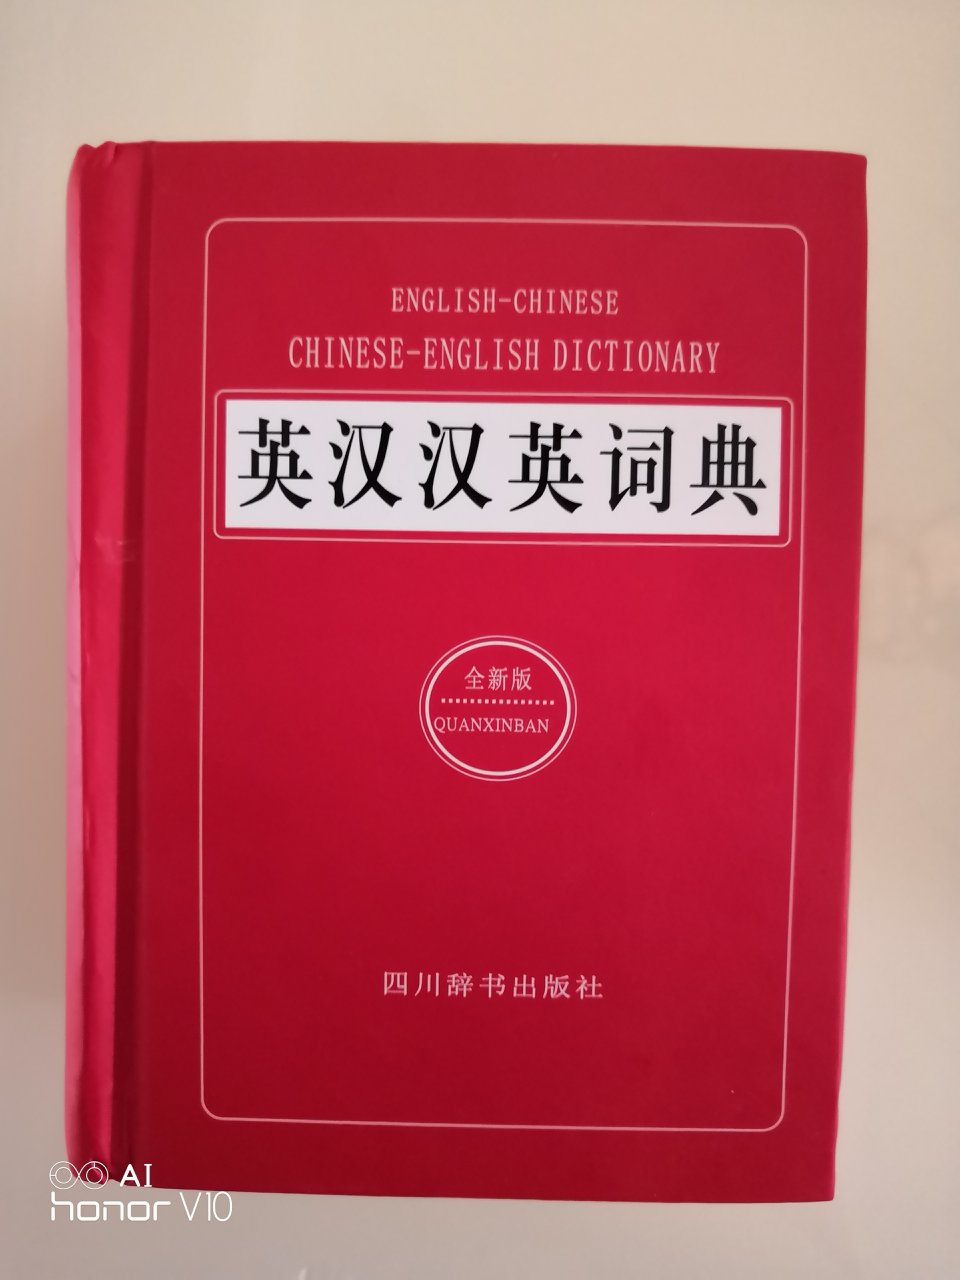 非常好啊这英语词典，平常查查英语单词，还是英汉双译的，非常满意，特别物流速度很快满意